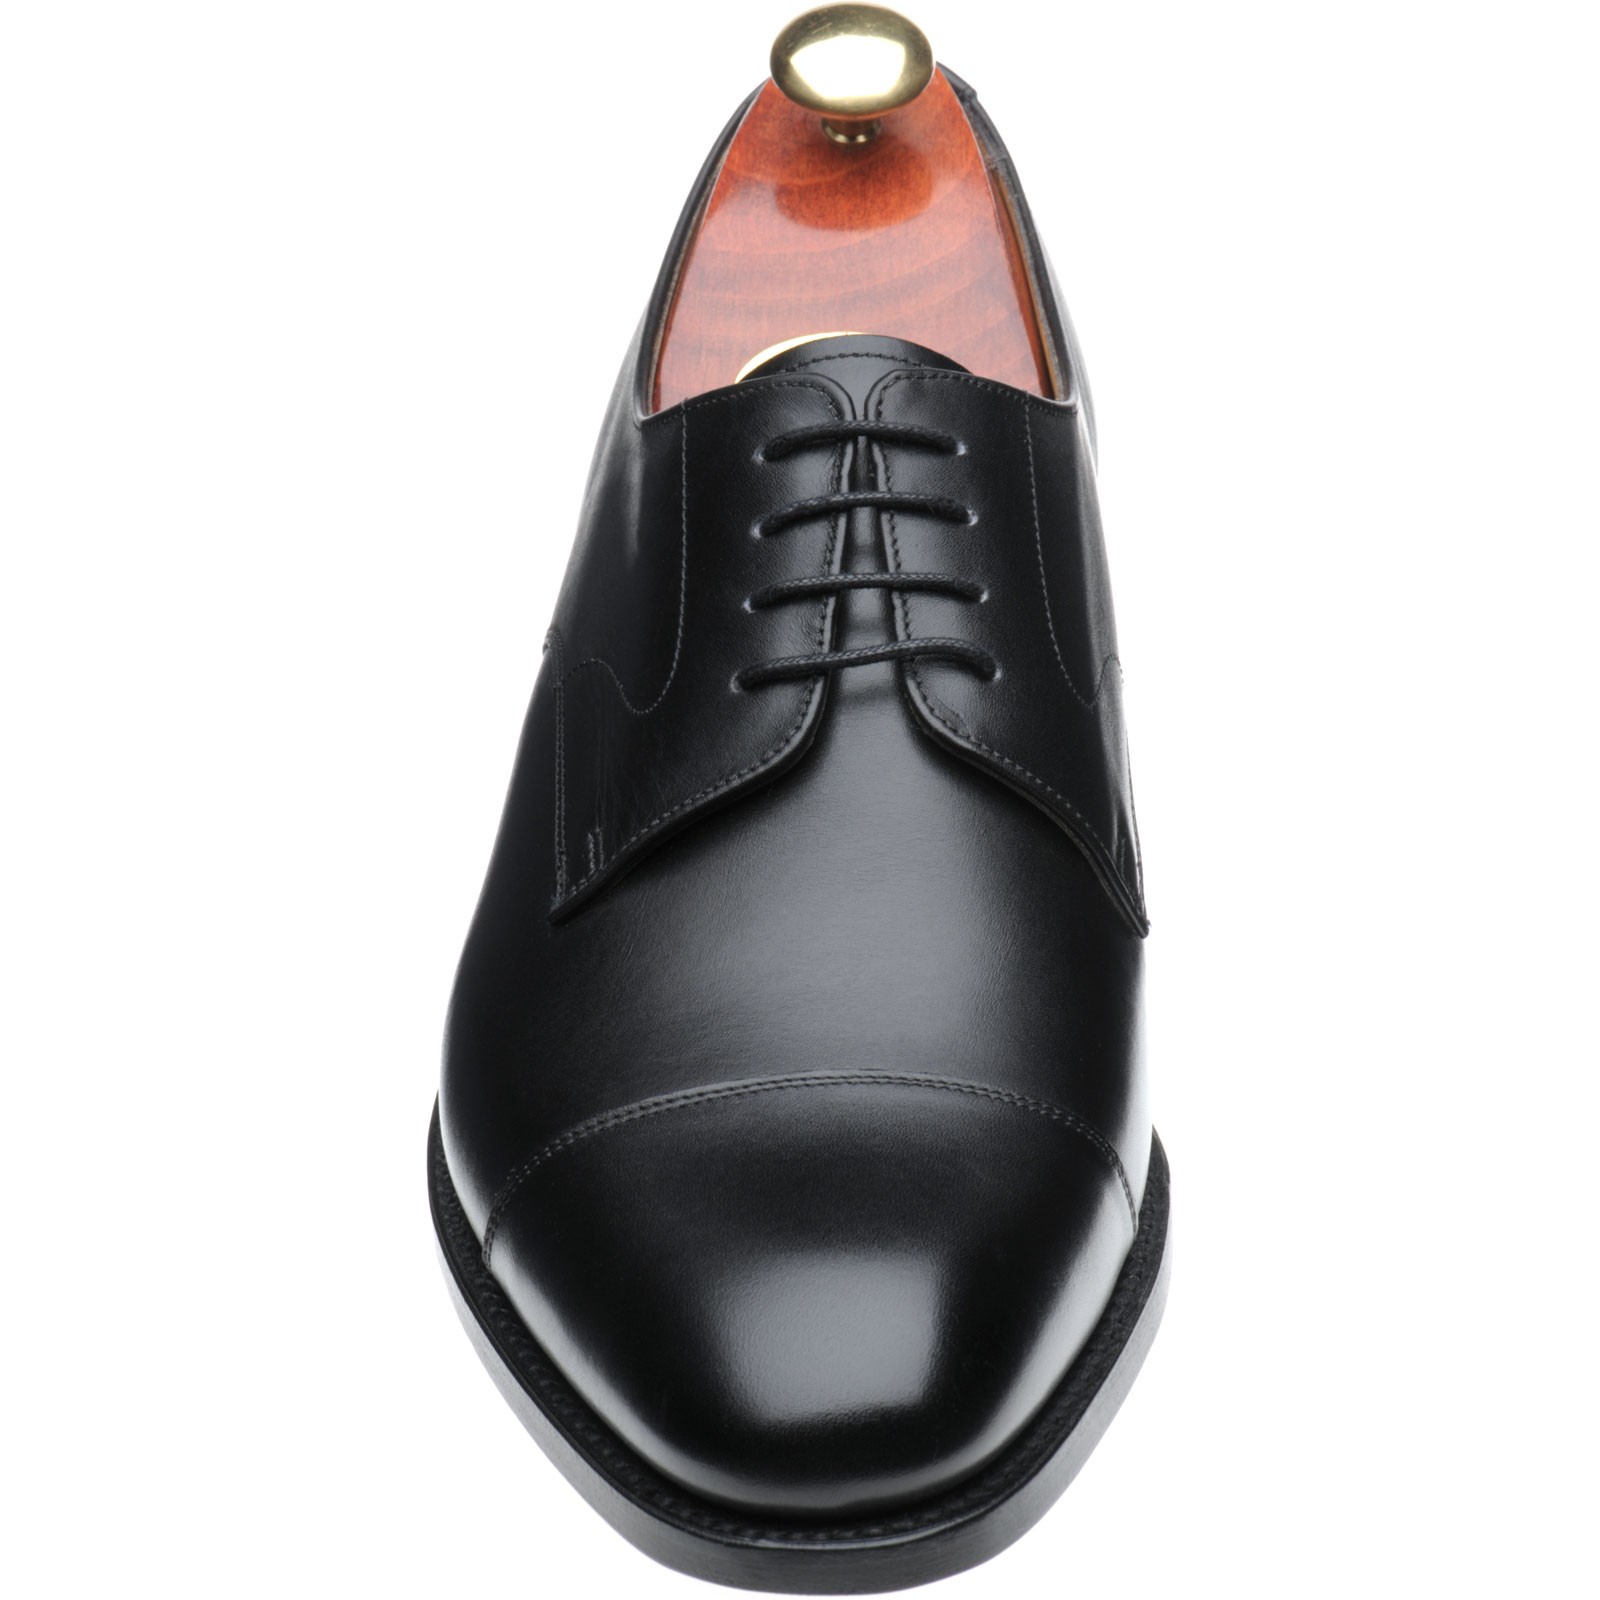 Barker shoes | Barker Professional | Morden Derby shoes in Black Calf ...